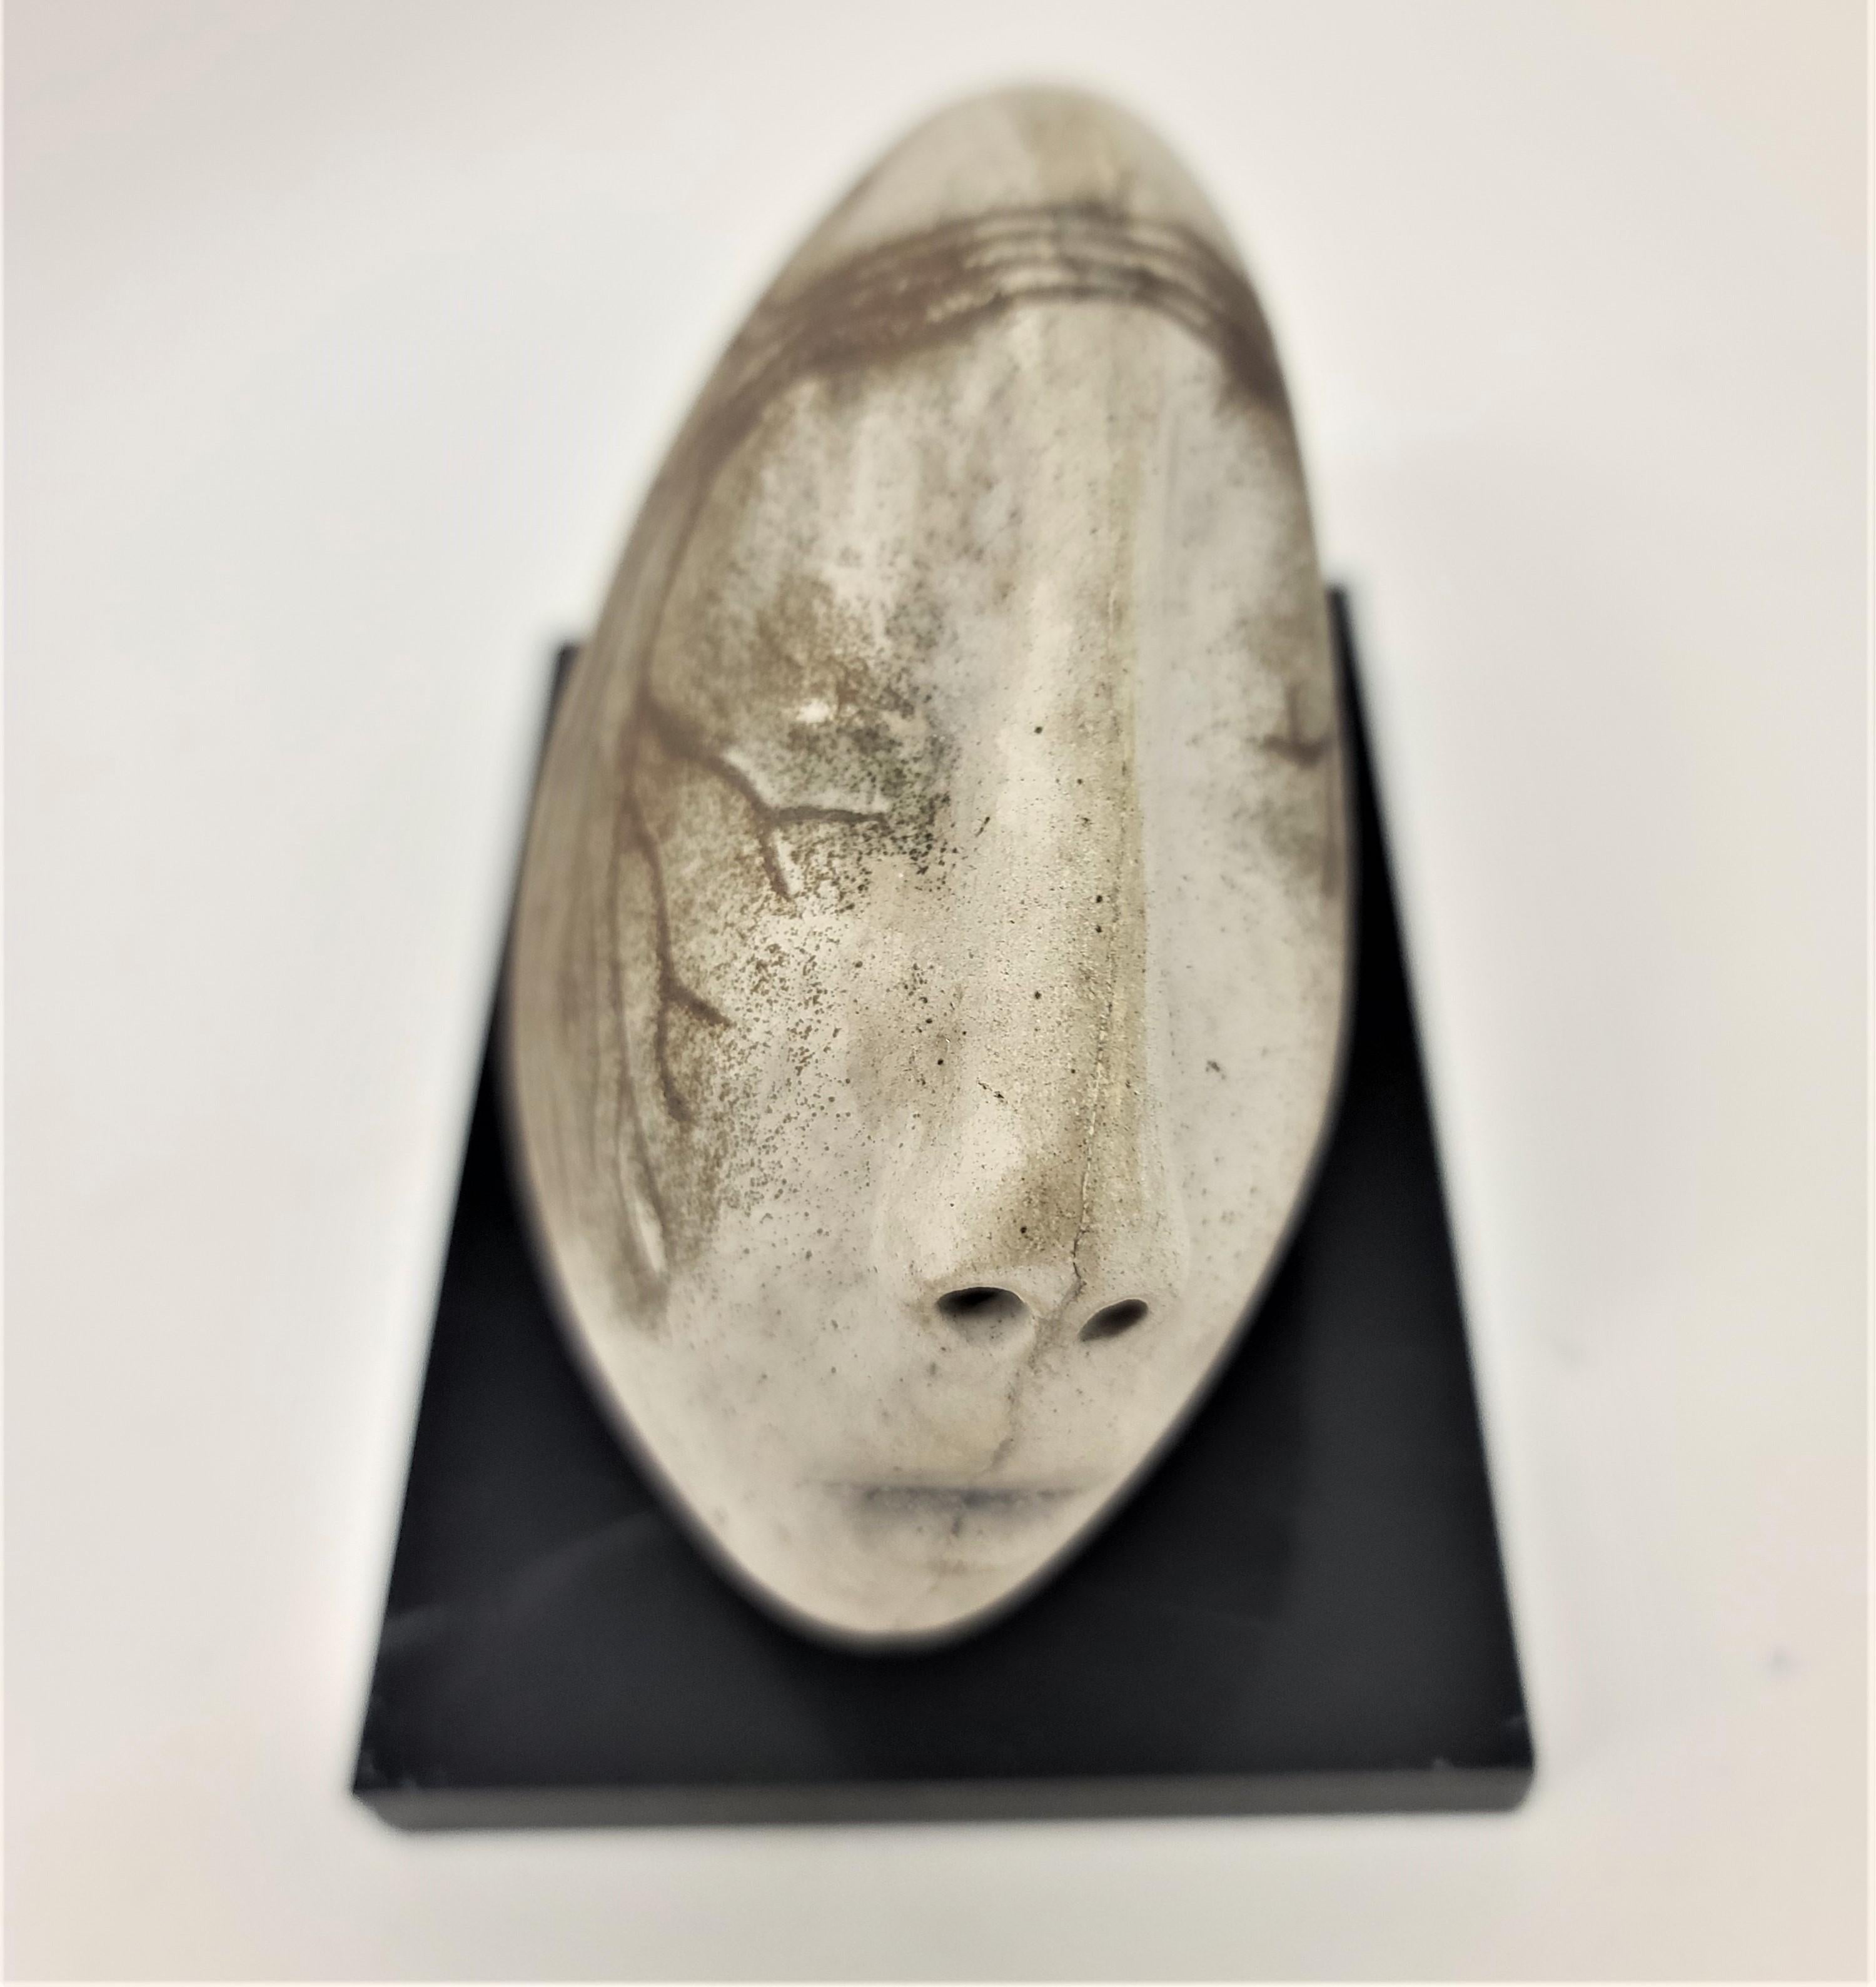 Une sculpture d'une tête abstraite en céramique, montée sur une base acrylique noire, par un artiste inconnu. La tête et les traits humains ont été intentionnellement déformés en une forme organique de pierre, décorée de détails de racines. Les